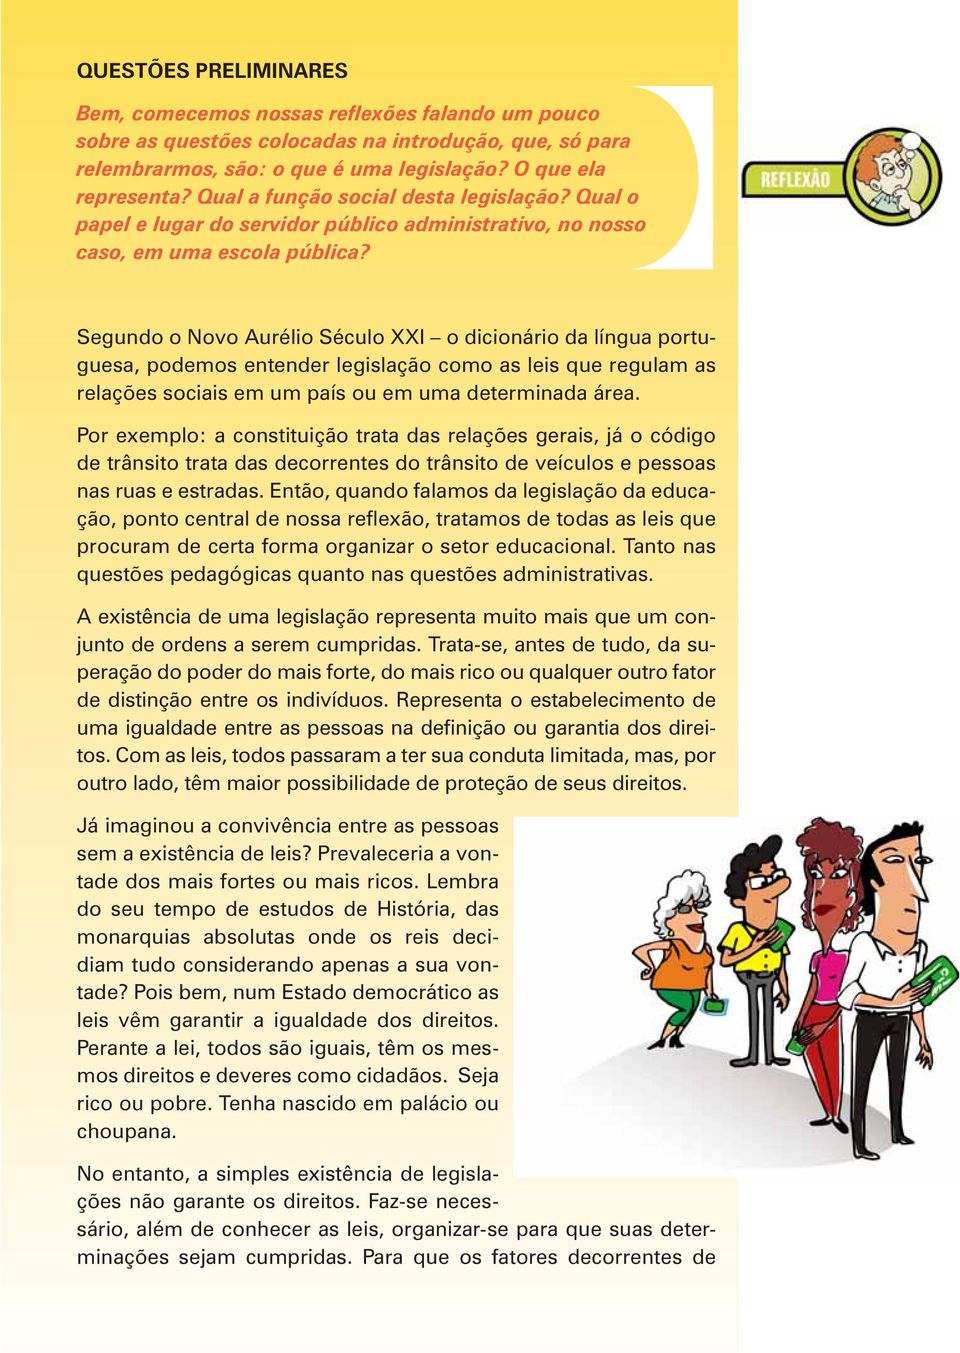 Segundo o Novo Aurélio Século XXI o dicionário da língua portuguesa, podemos entender legislação como as leis que regulam as relações sociais em um país ou em uma determinada área.